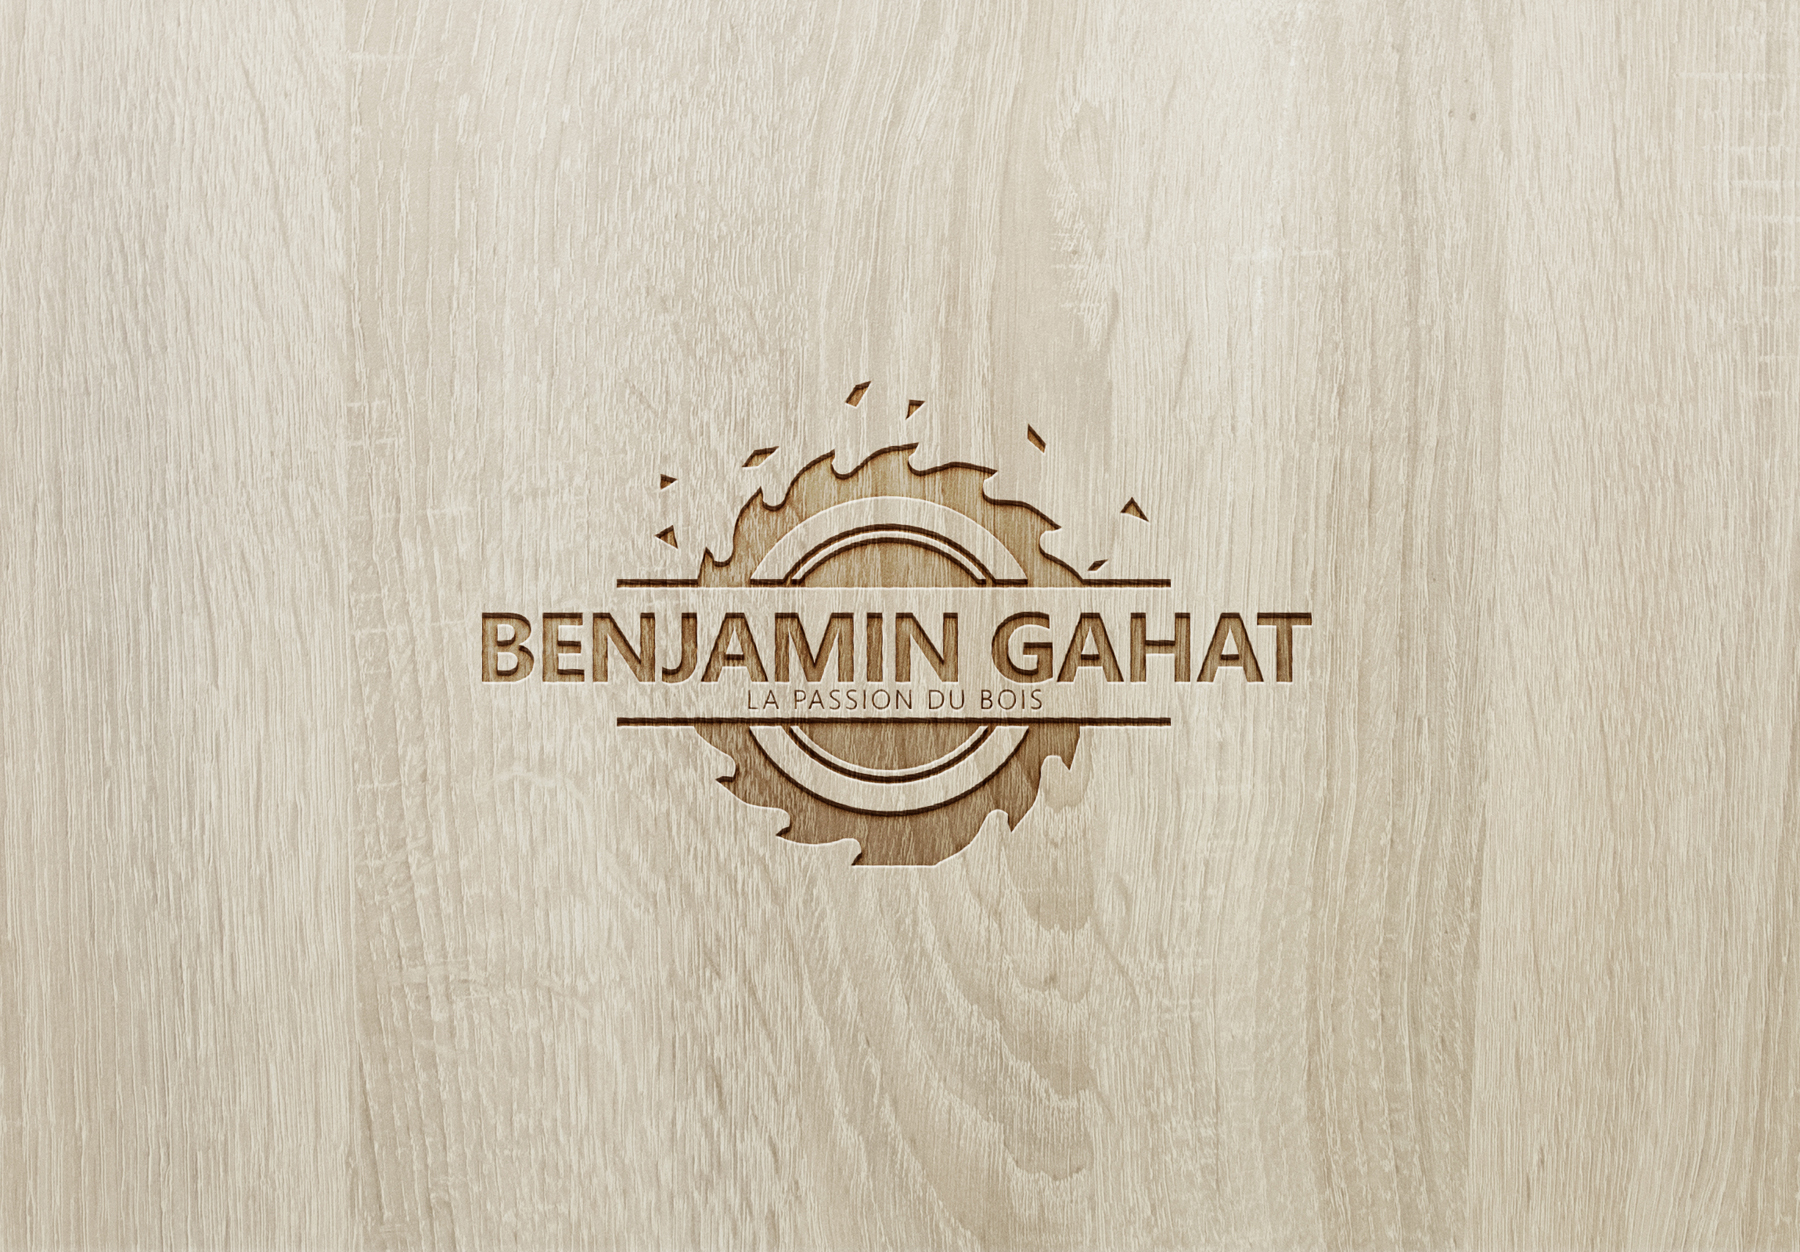 Benjamin Gahat